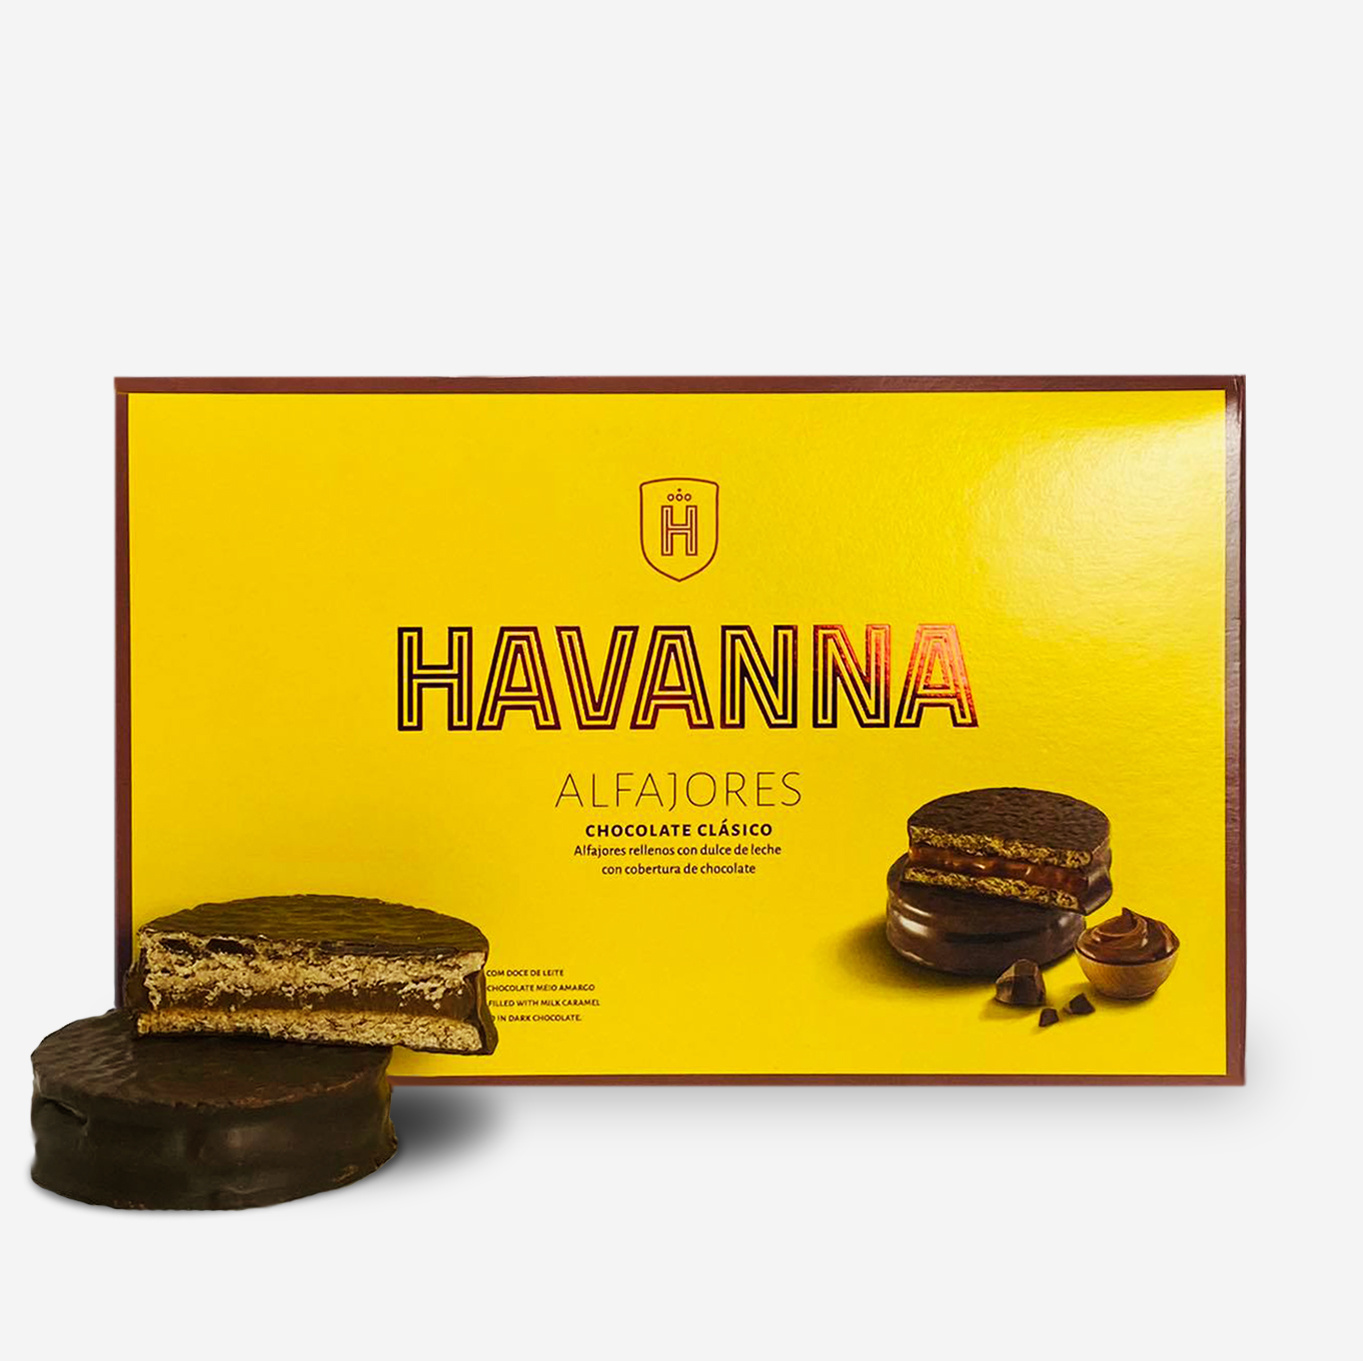 HAVANNA ALFAJORES CHOCOLATE 12 ARGENTINA compra en linea! - SOUTH EMBASSY